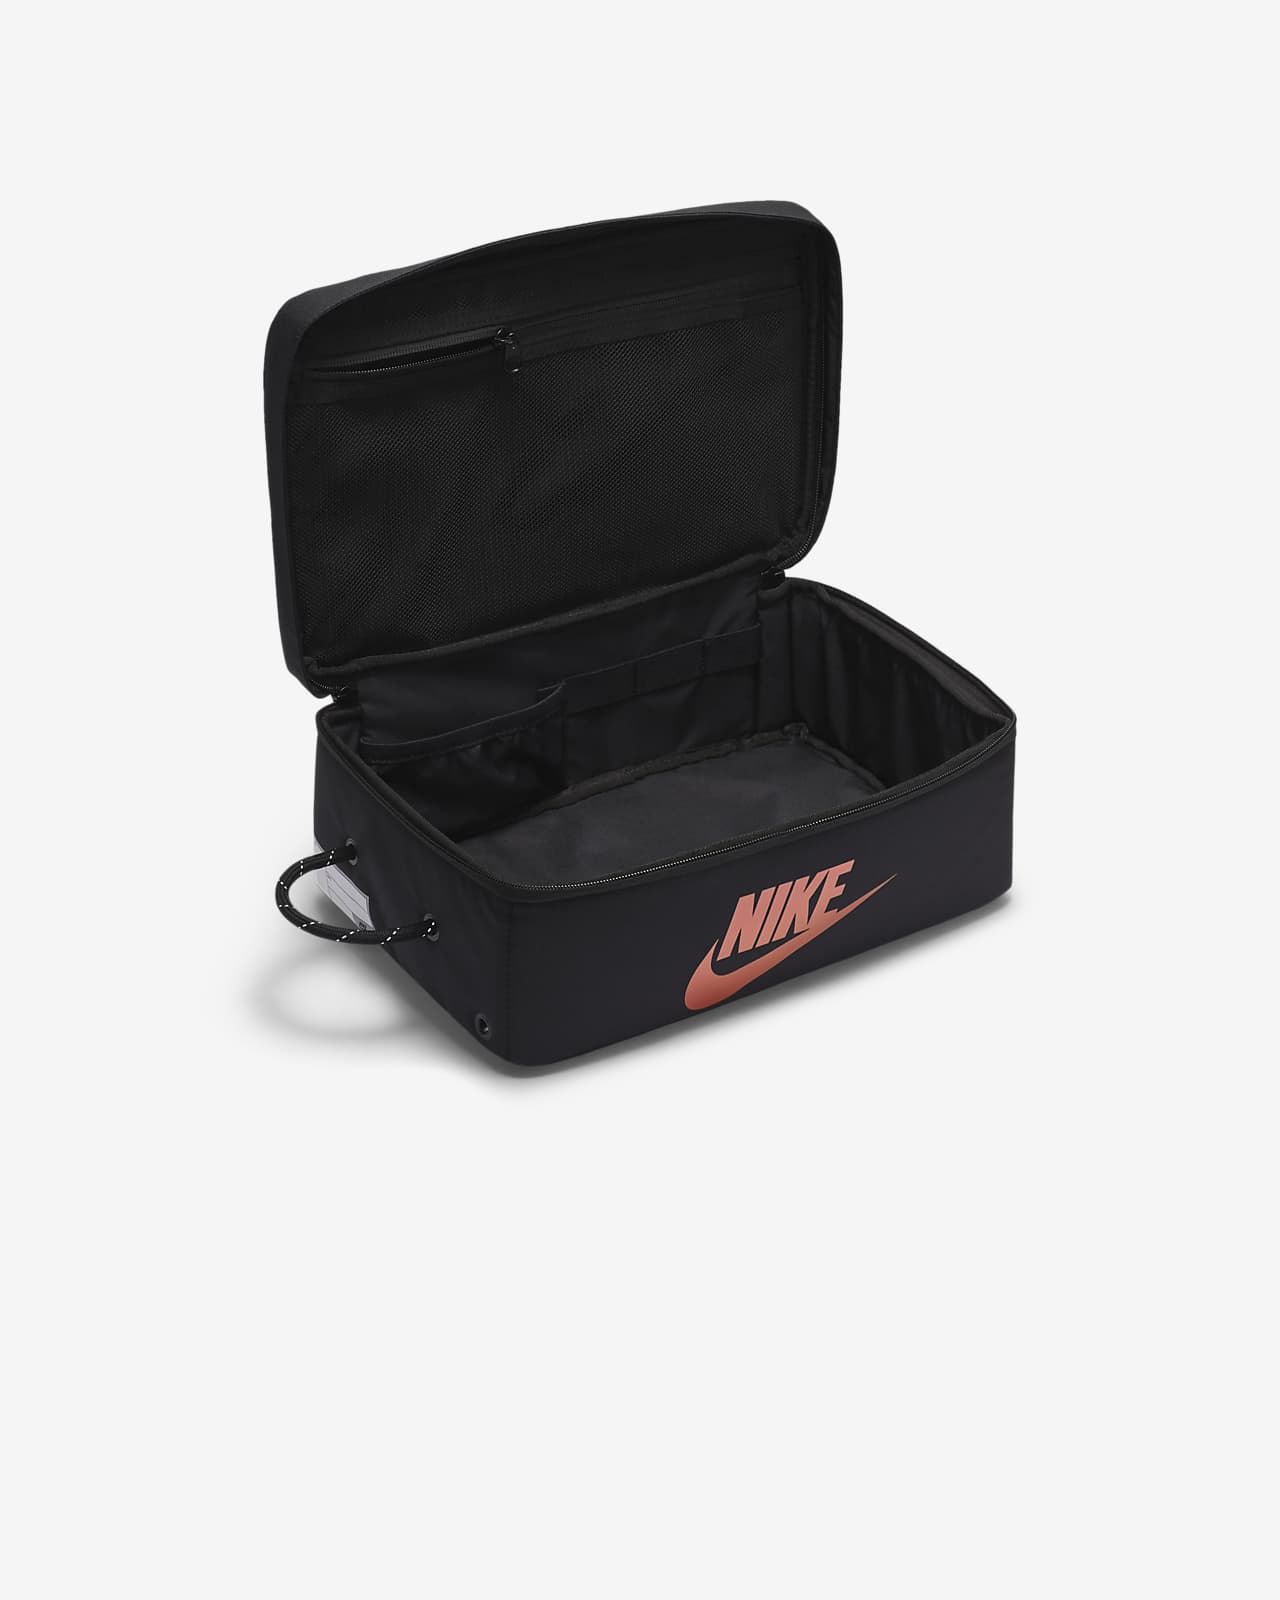 Nike Shoe Box Bag 12L Sail / Brown - DA7337-133 | Sneaker District